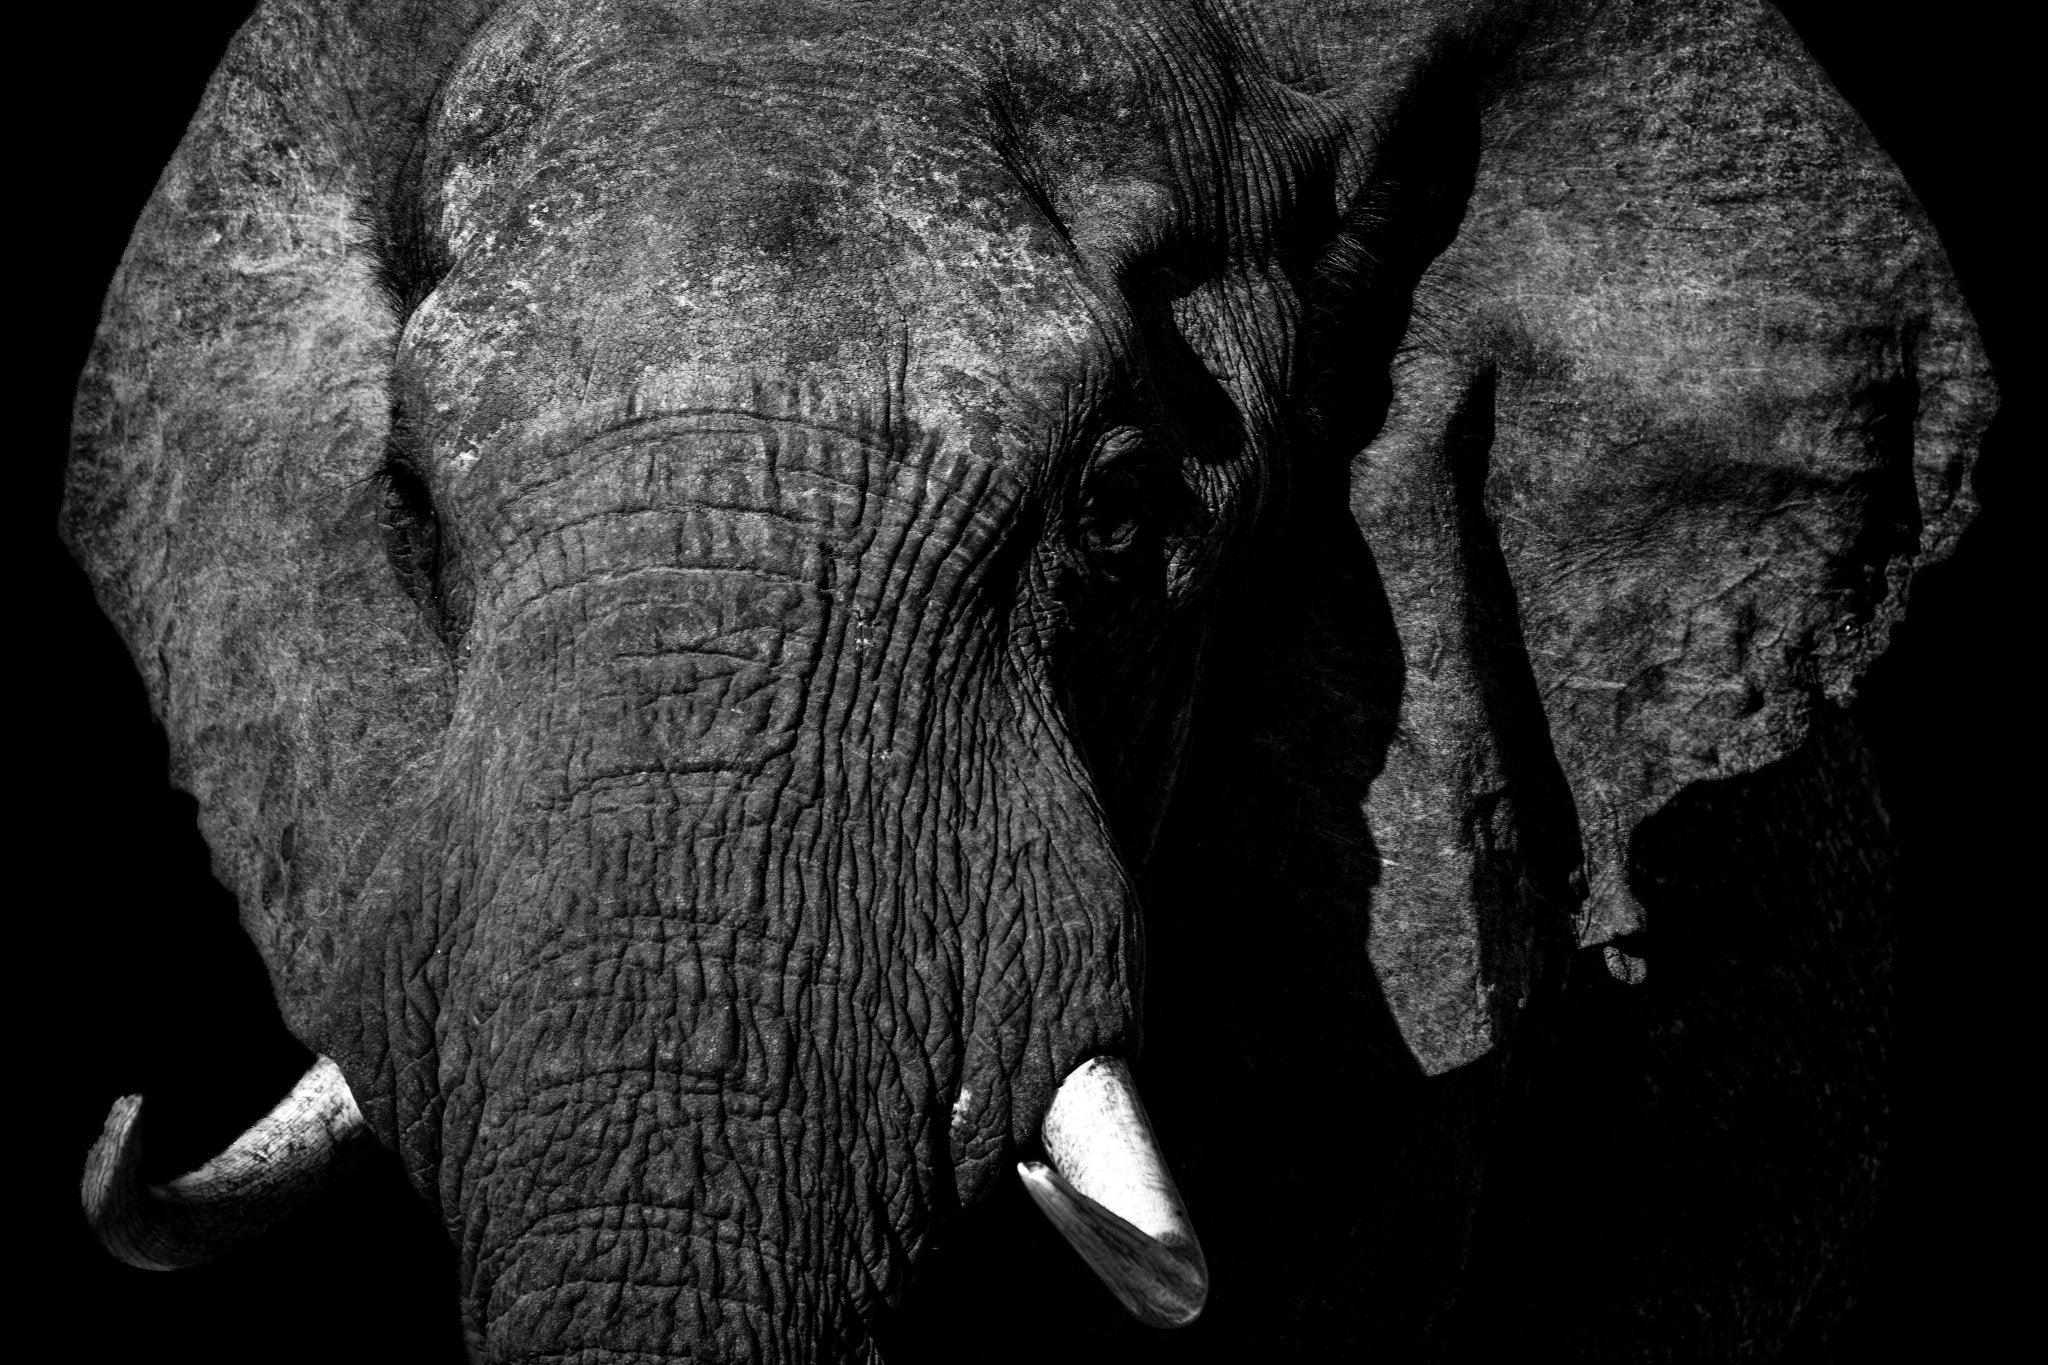 Monochrome Elephant Portrait - Picture This